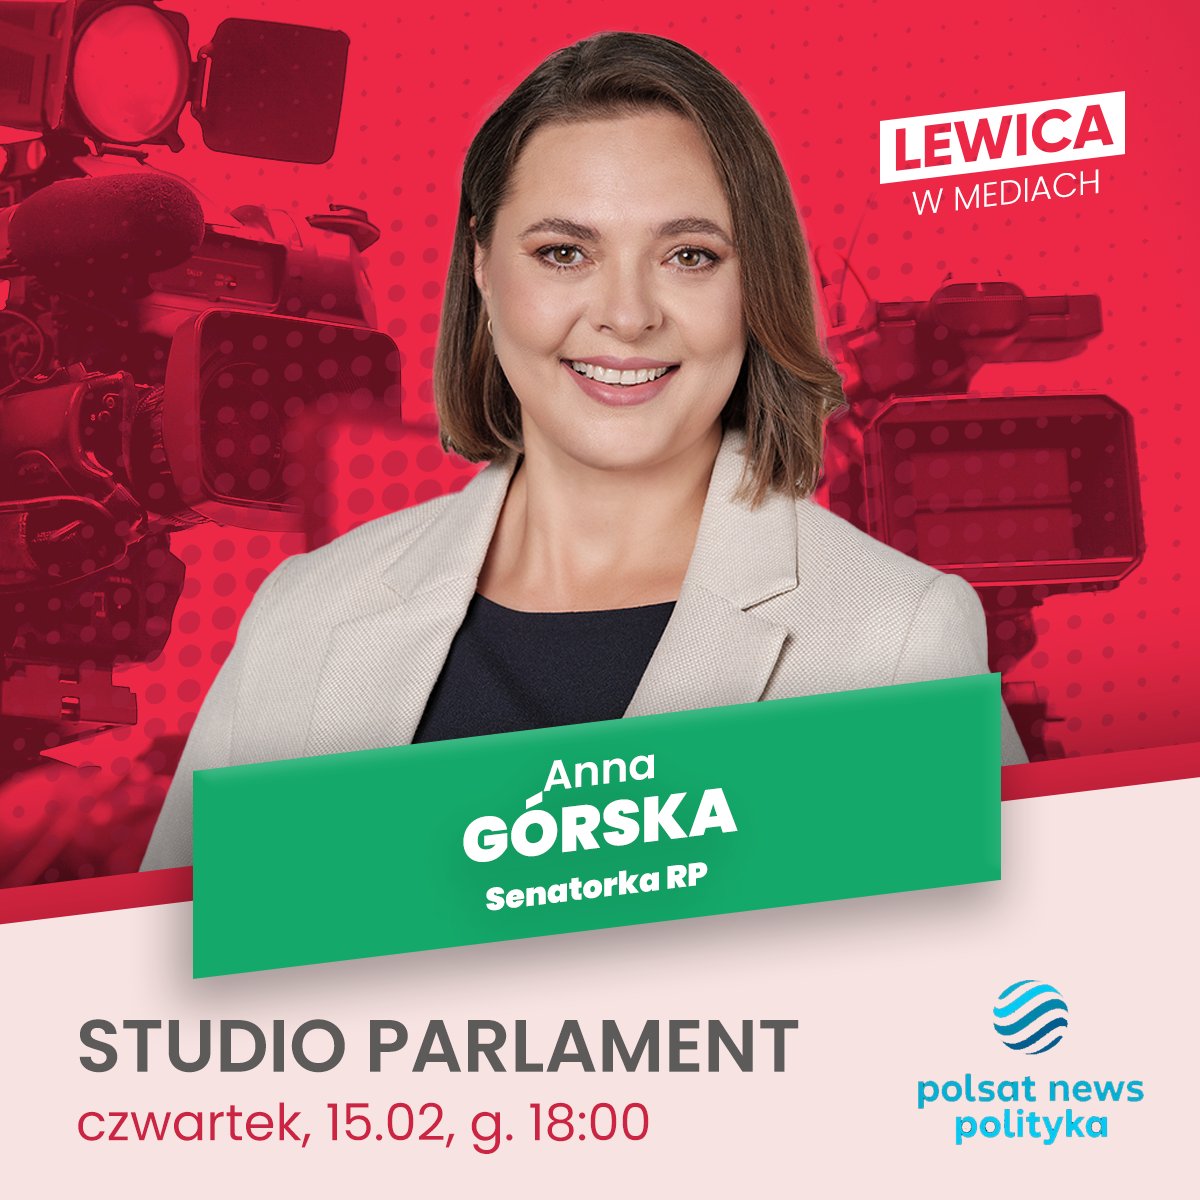 📺 Senatorka RP @AnnaGorska_PL dziś o 18:00 będzie gościnią programu #StudioParlament w @PNPolityka 

#LewicaWMediach